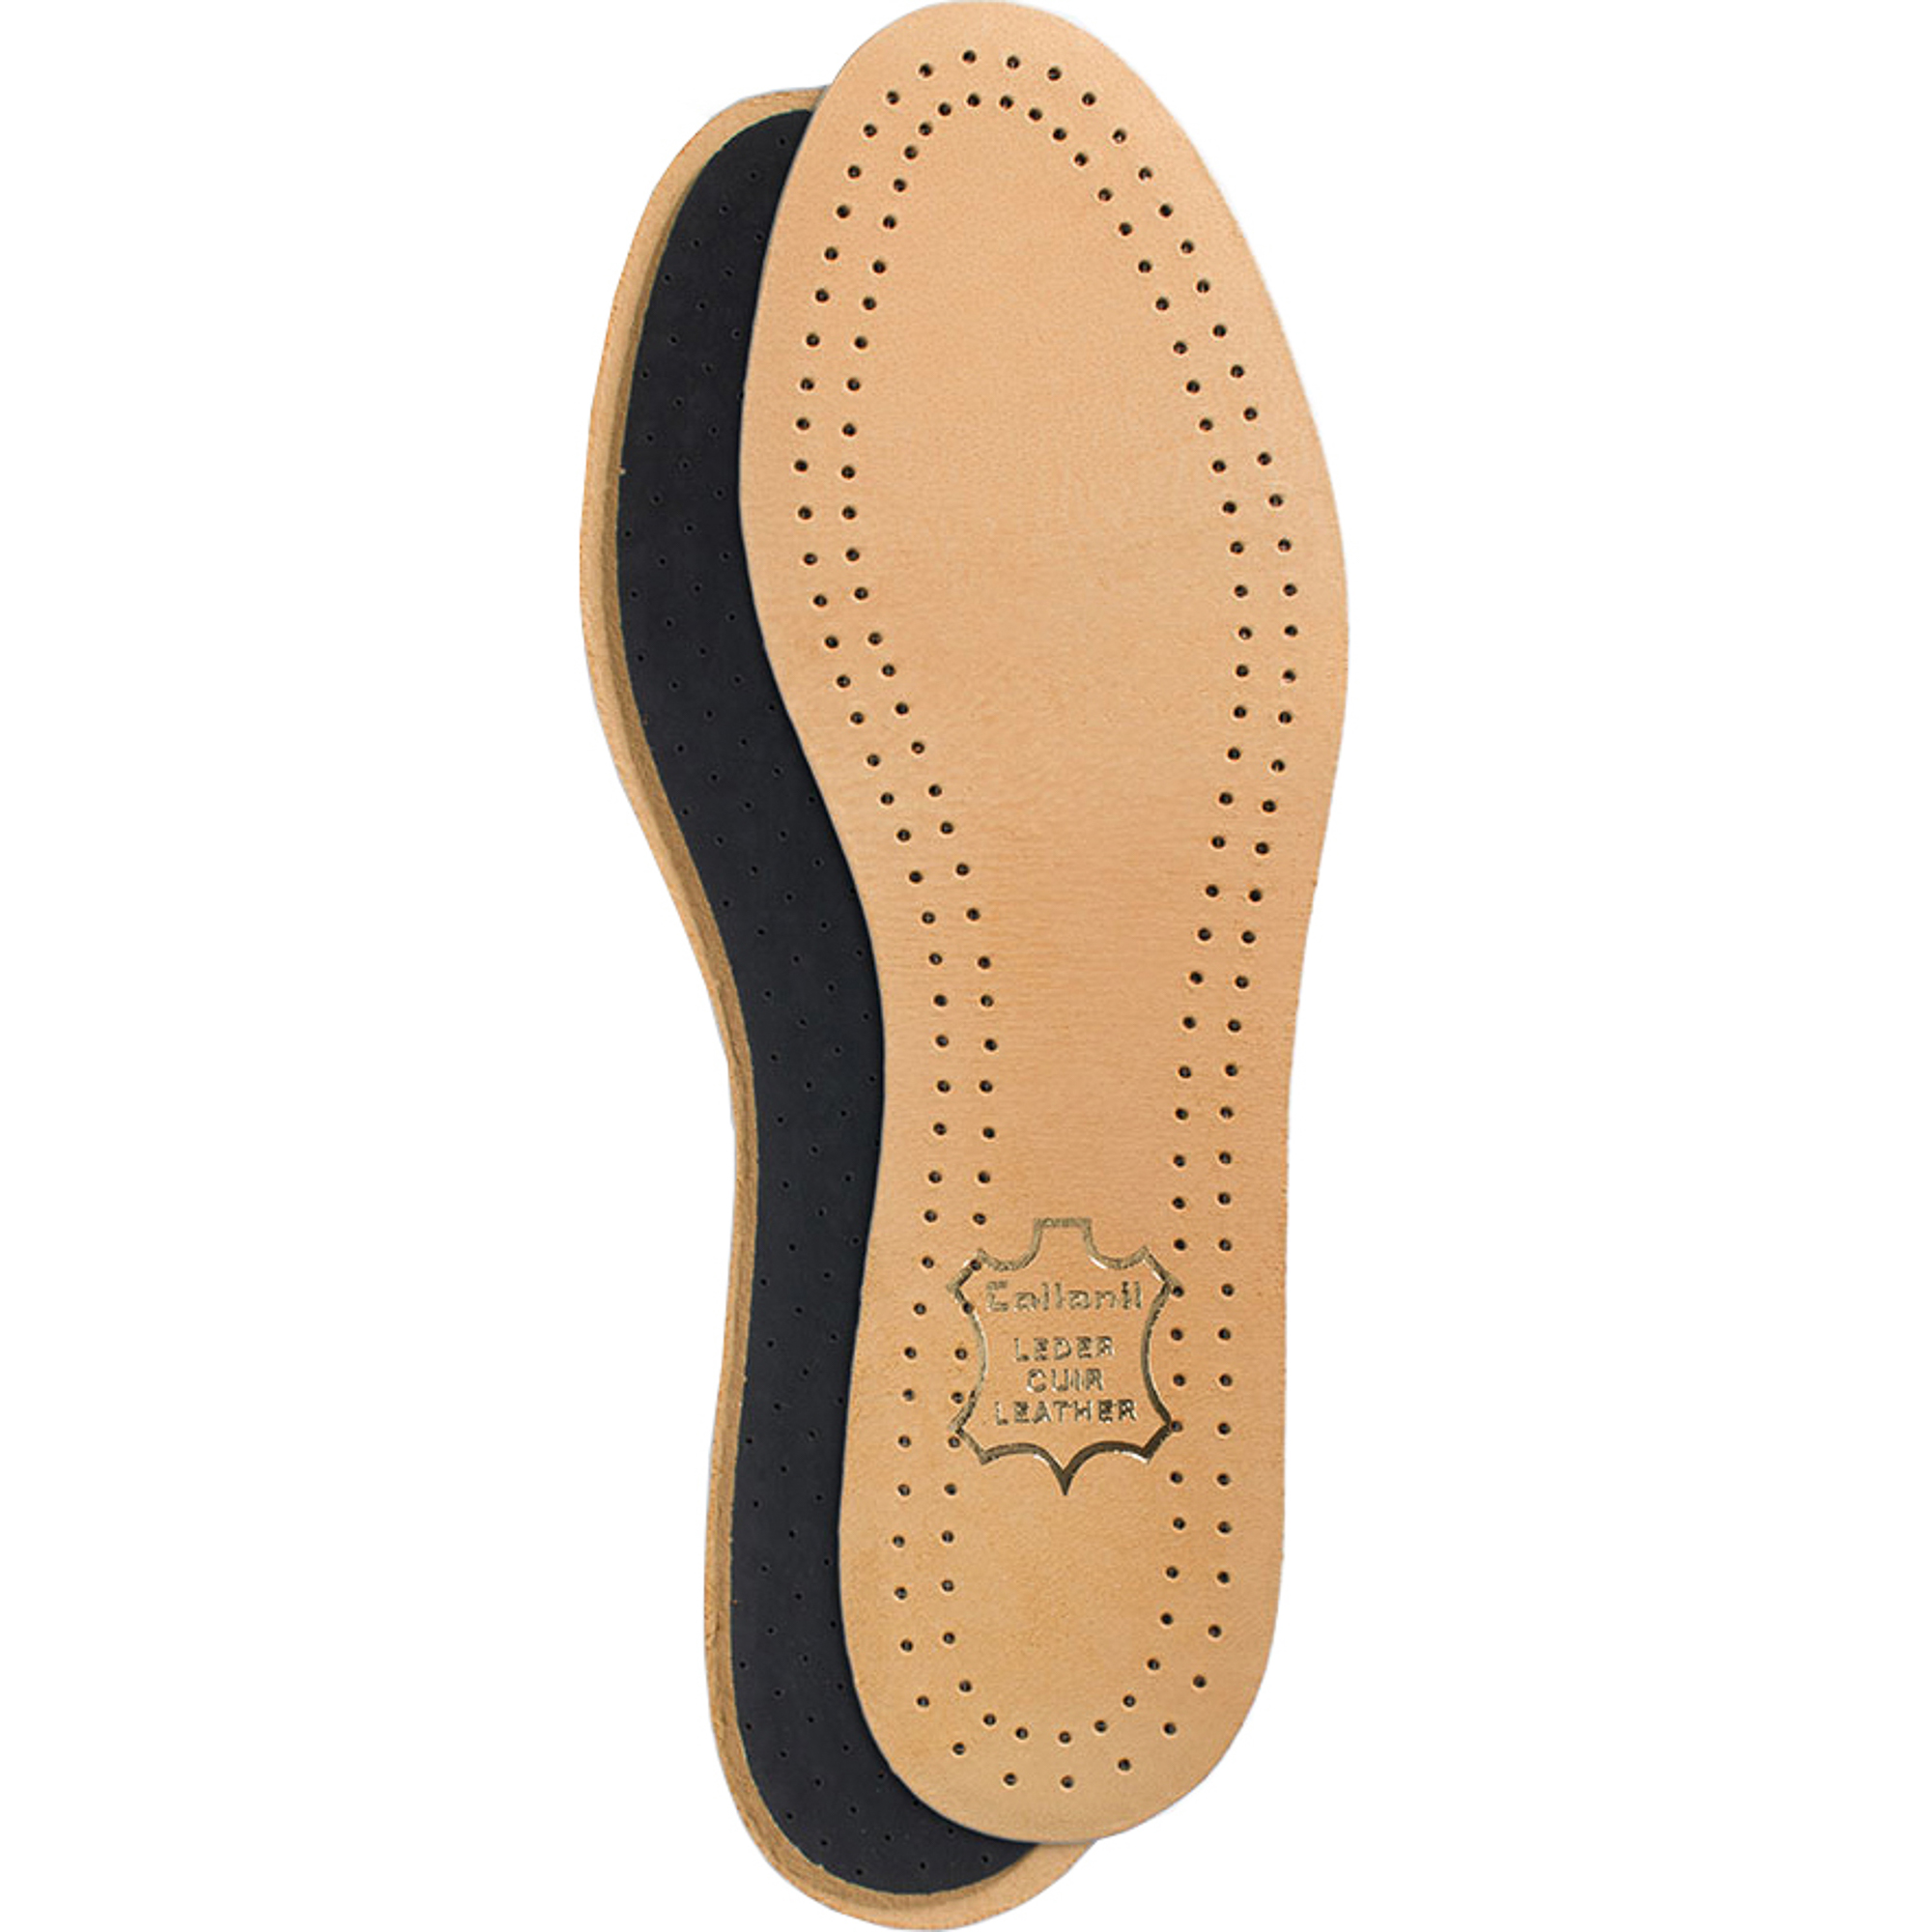 Стельки для обуви Collonil Luxor размер 39 стельки scholl gelactiv для открытой обуви